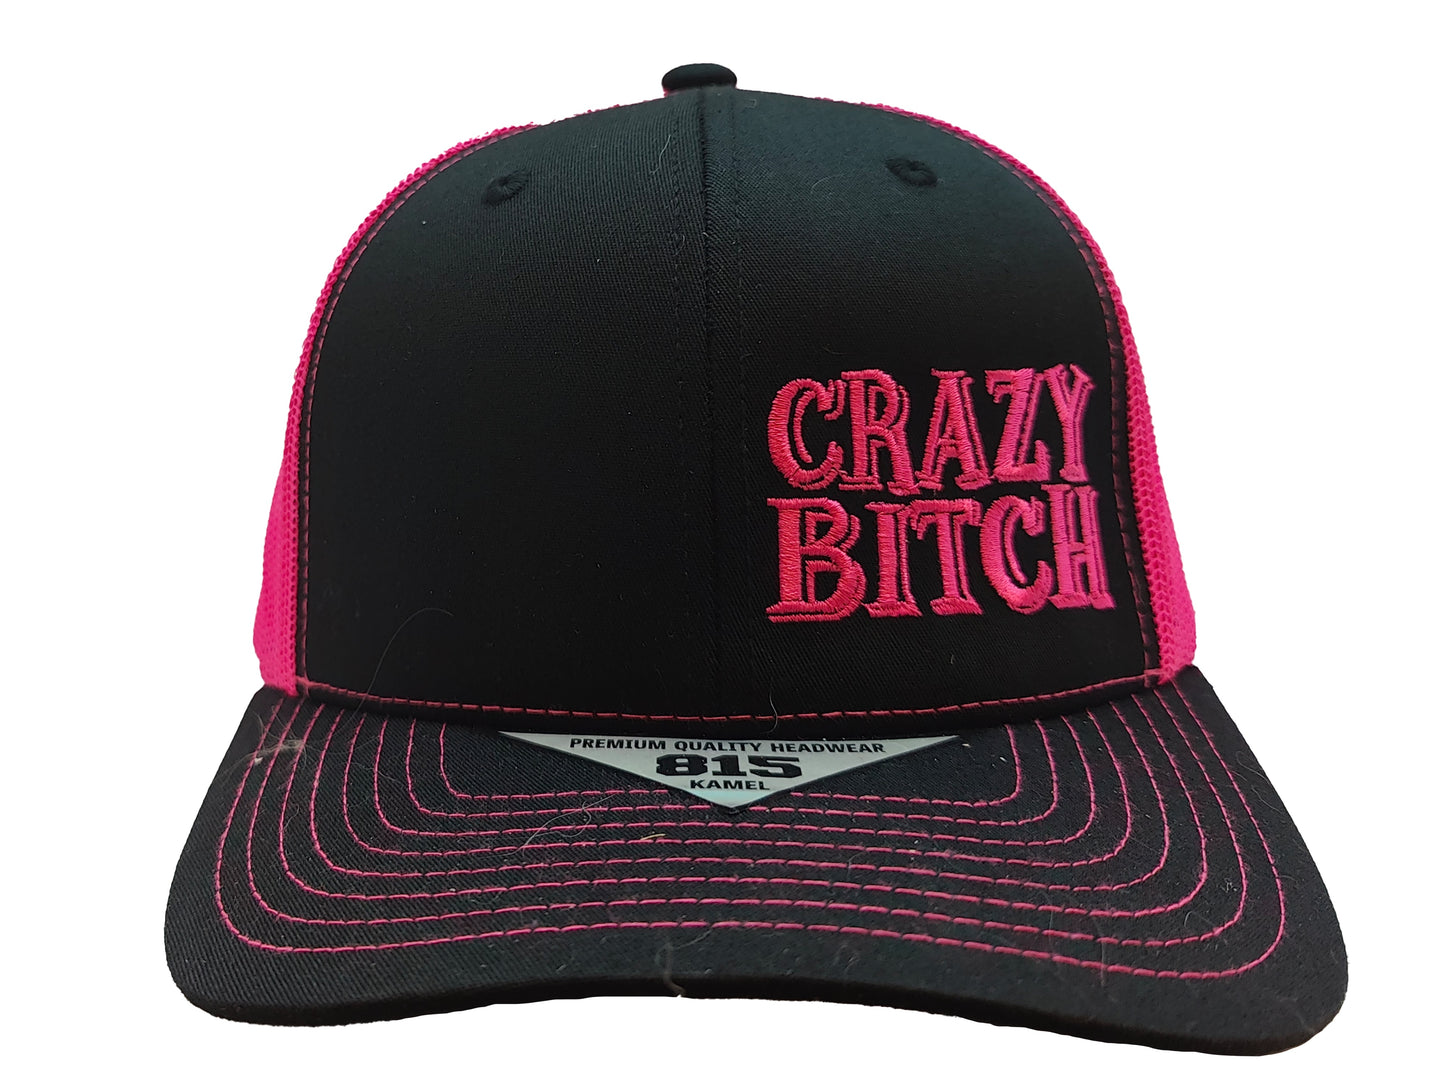 CRAZY BITCH Kamel Adult Hat 815 Black / Pink